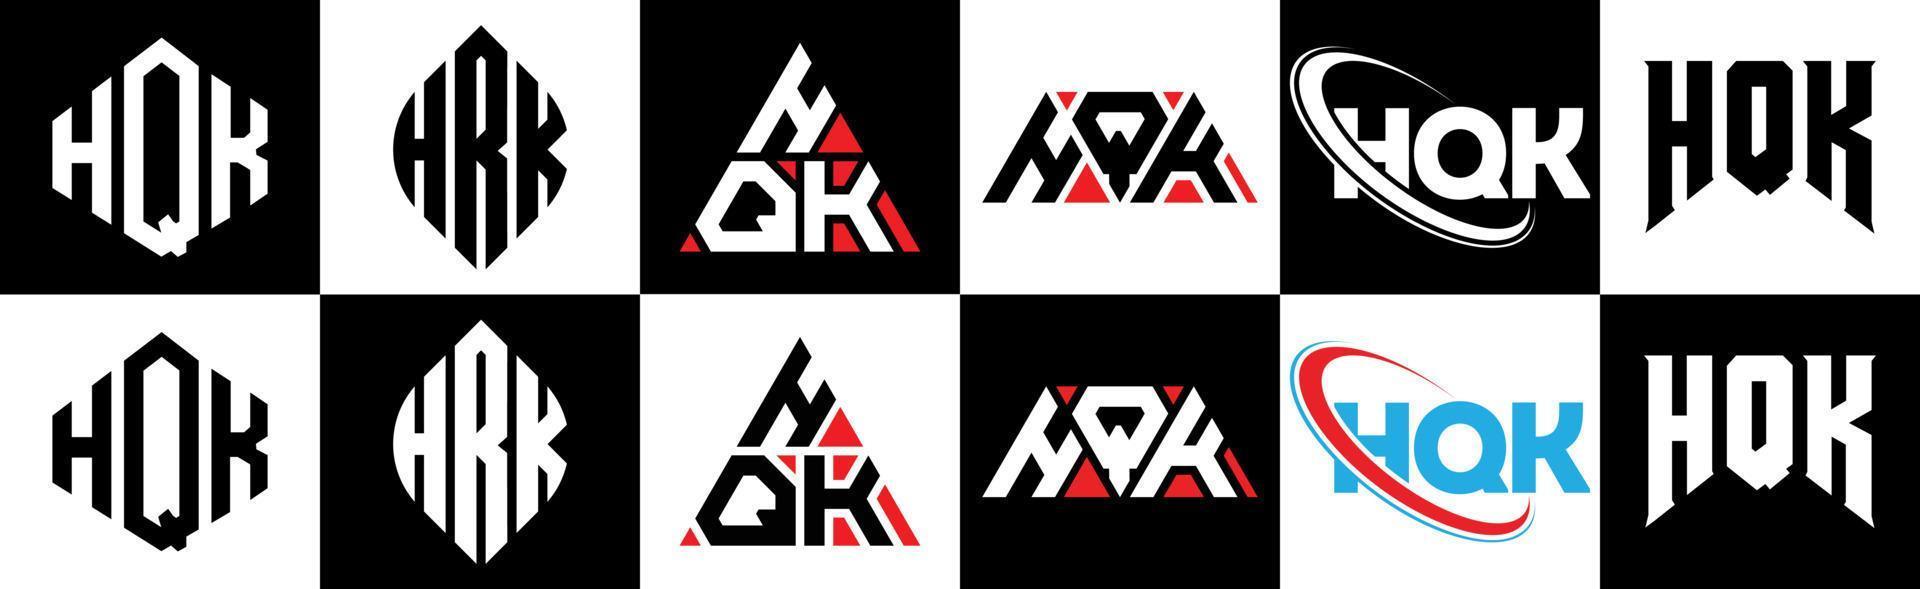 création de logo de lettre hqk en six styles. hqk polygone, cercle, triangle, hexagone, style plat et simple avec logo de lettre de variation de couleur noir et blanc dans un plan de travail. hqk logo minimaliste et classique vecteur